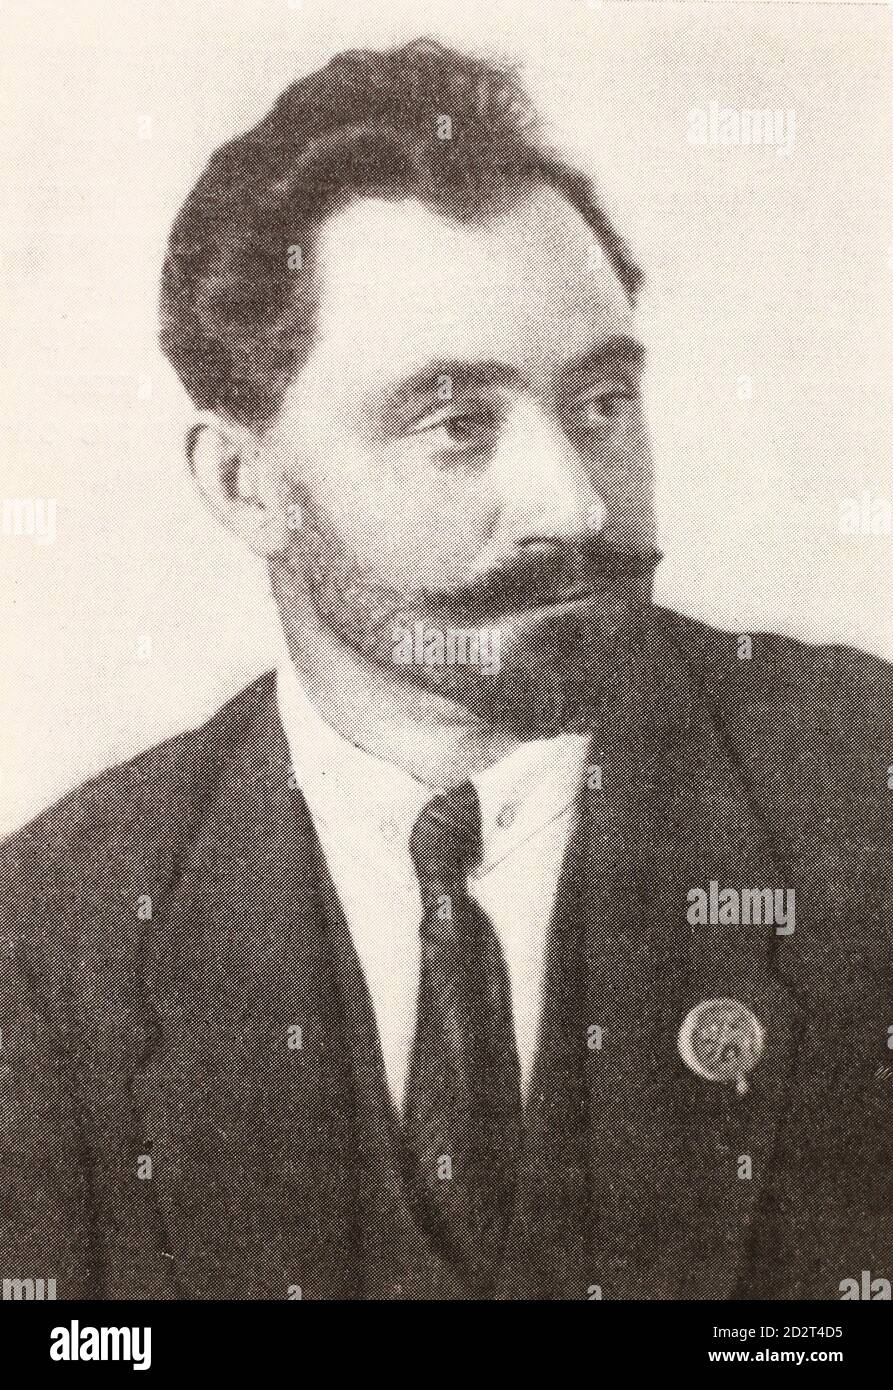 Georgi Dimitrov Michajlow im Jahre 1921. Georgi Dimitrov Mikhaylov auch bekannt als Georgi Mikhaylowitsch Dimitrov war ein bulgarischer kommunistischer Politiker. Von 1946 bis 1949 war er der erste kommunistische Führer Bulgariens. Dimitrov leitete die Kommunistische Internationale von 1934 bis 1943. Stockfoto